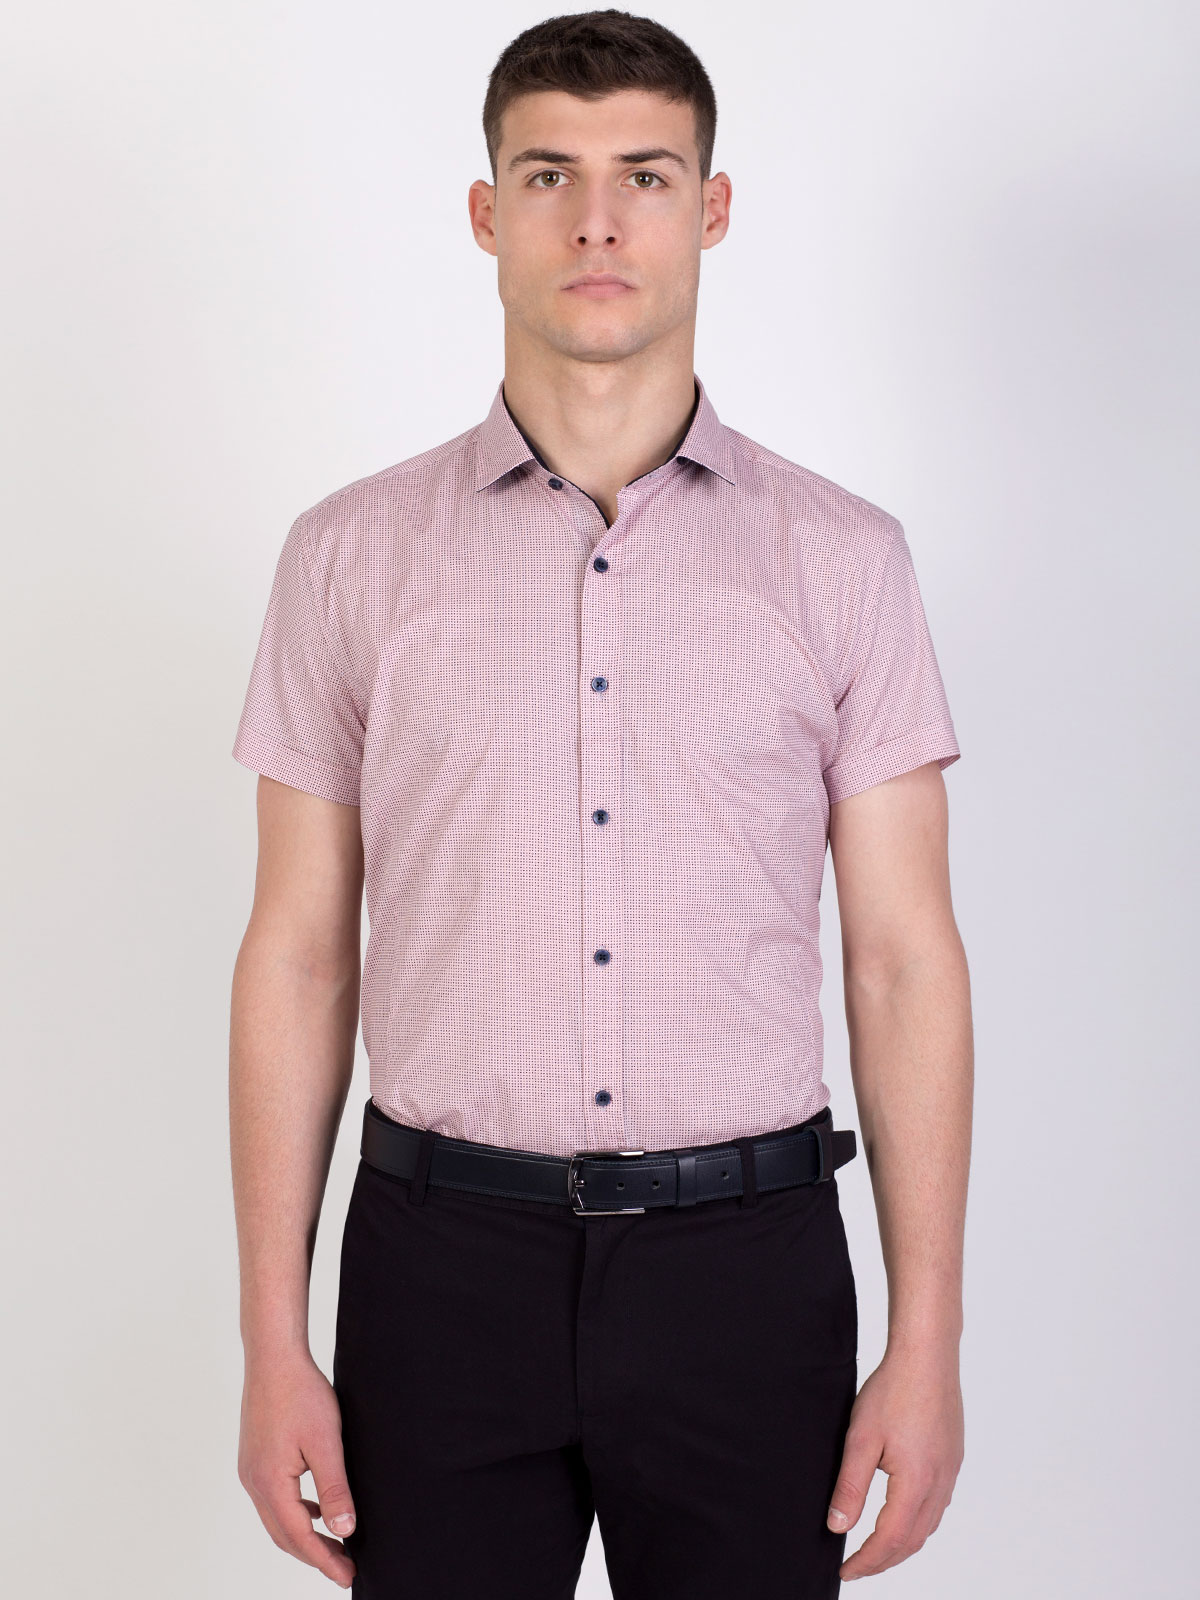 Εφαρμοσμένο ροζ πουκάμισο για μικρές φι - 80201 € 11.25 img4